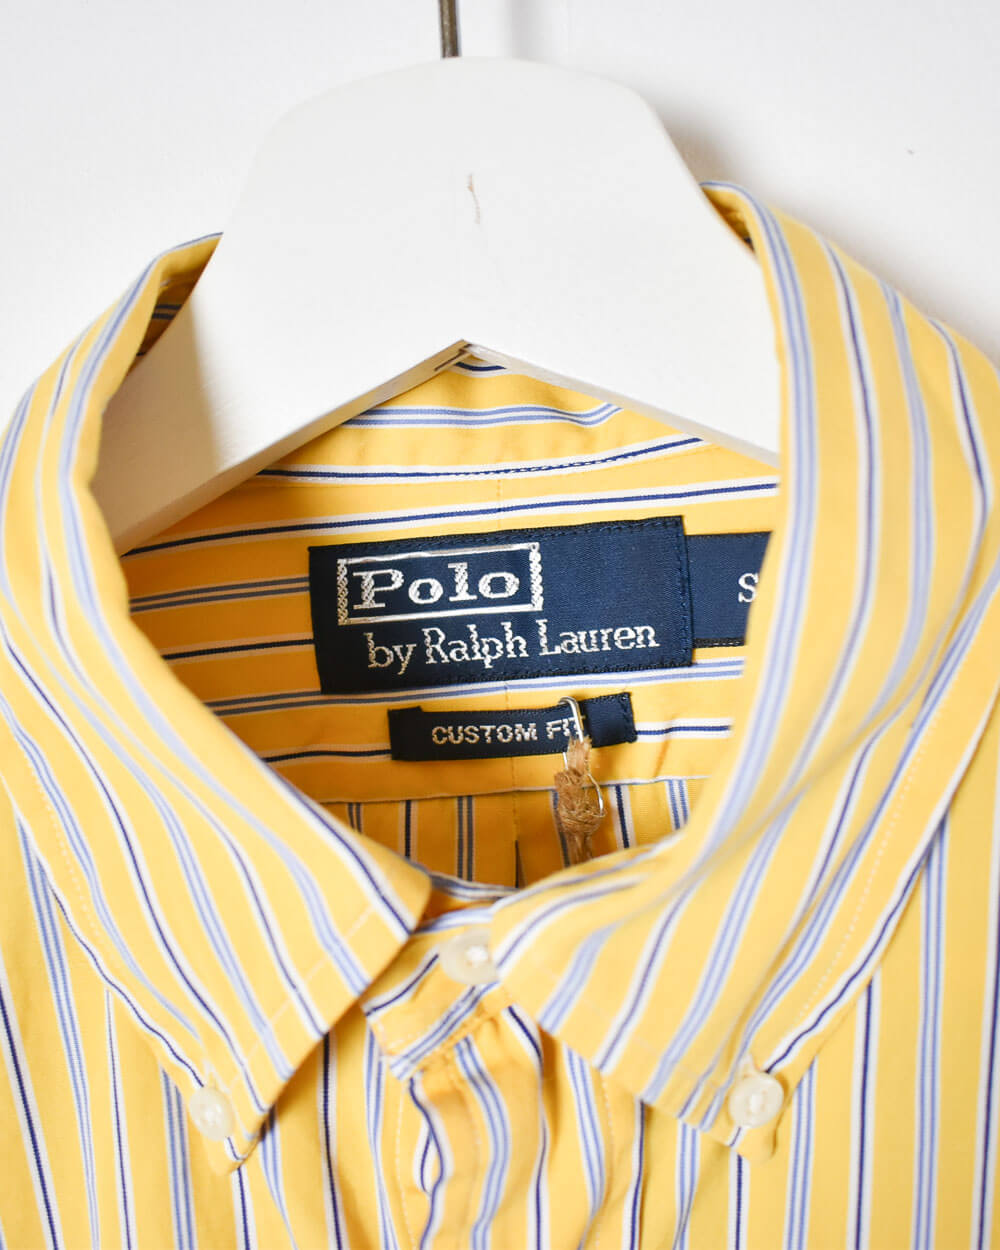 Yellow Ralph Lauren Shirt - Small